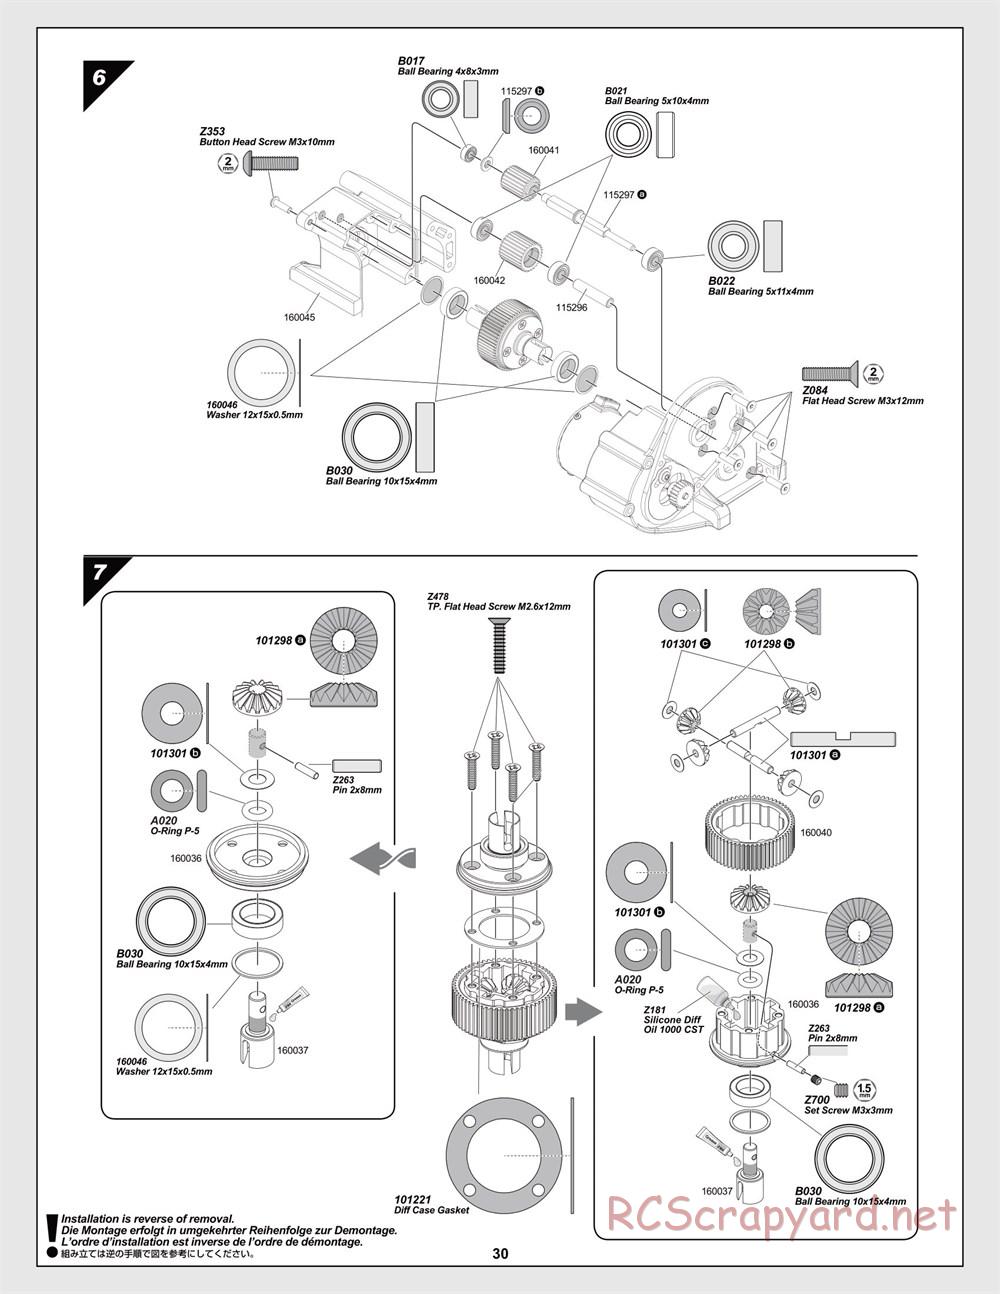 HPI - Jumpshot MT Flux - Manual - Page 30